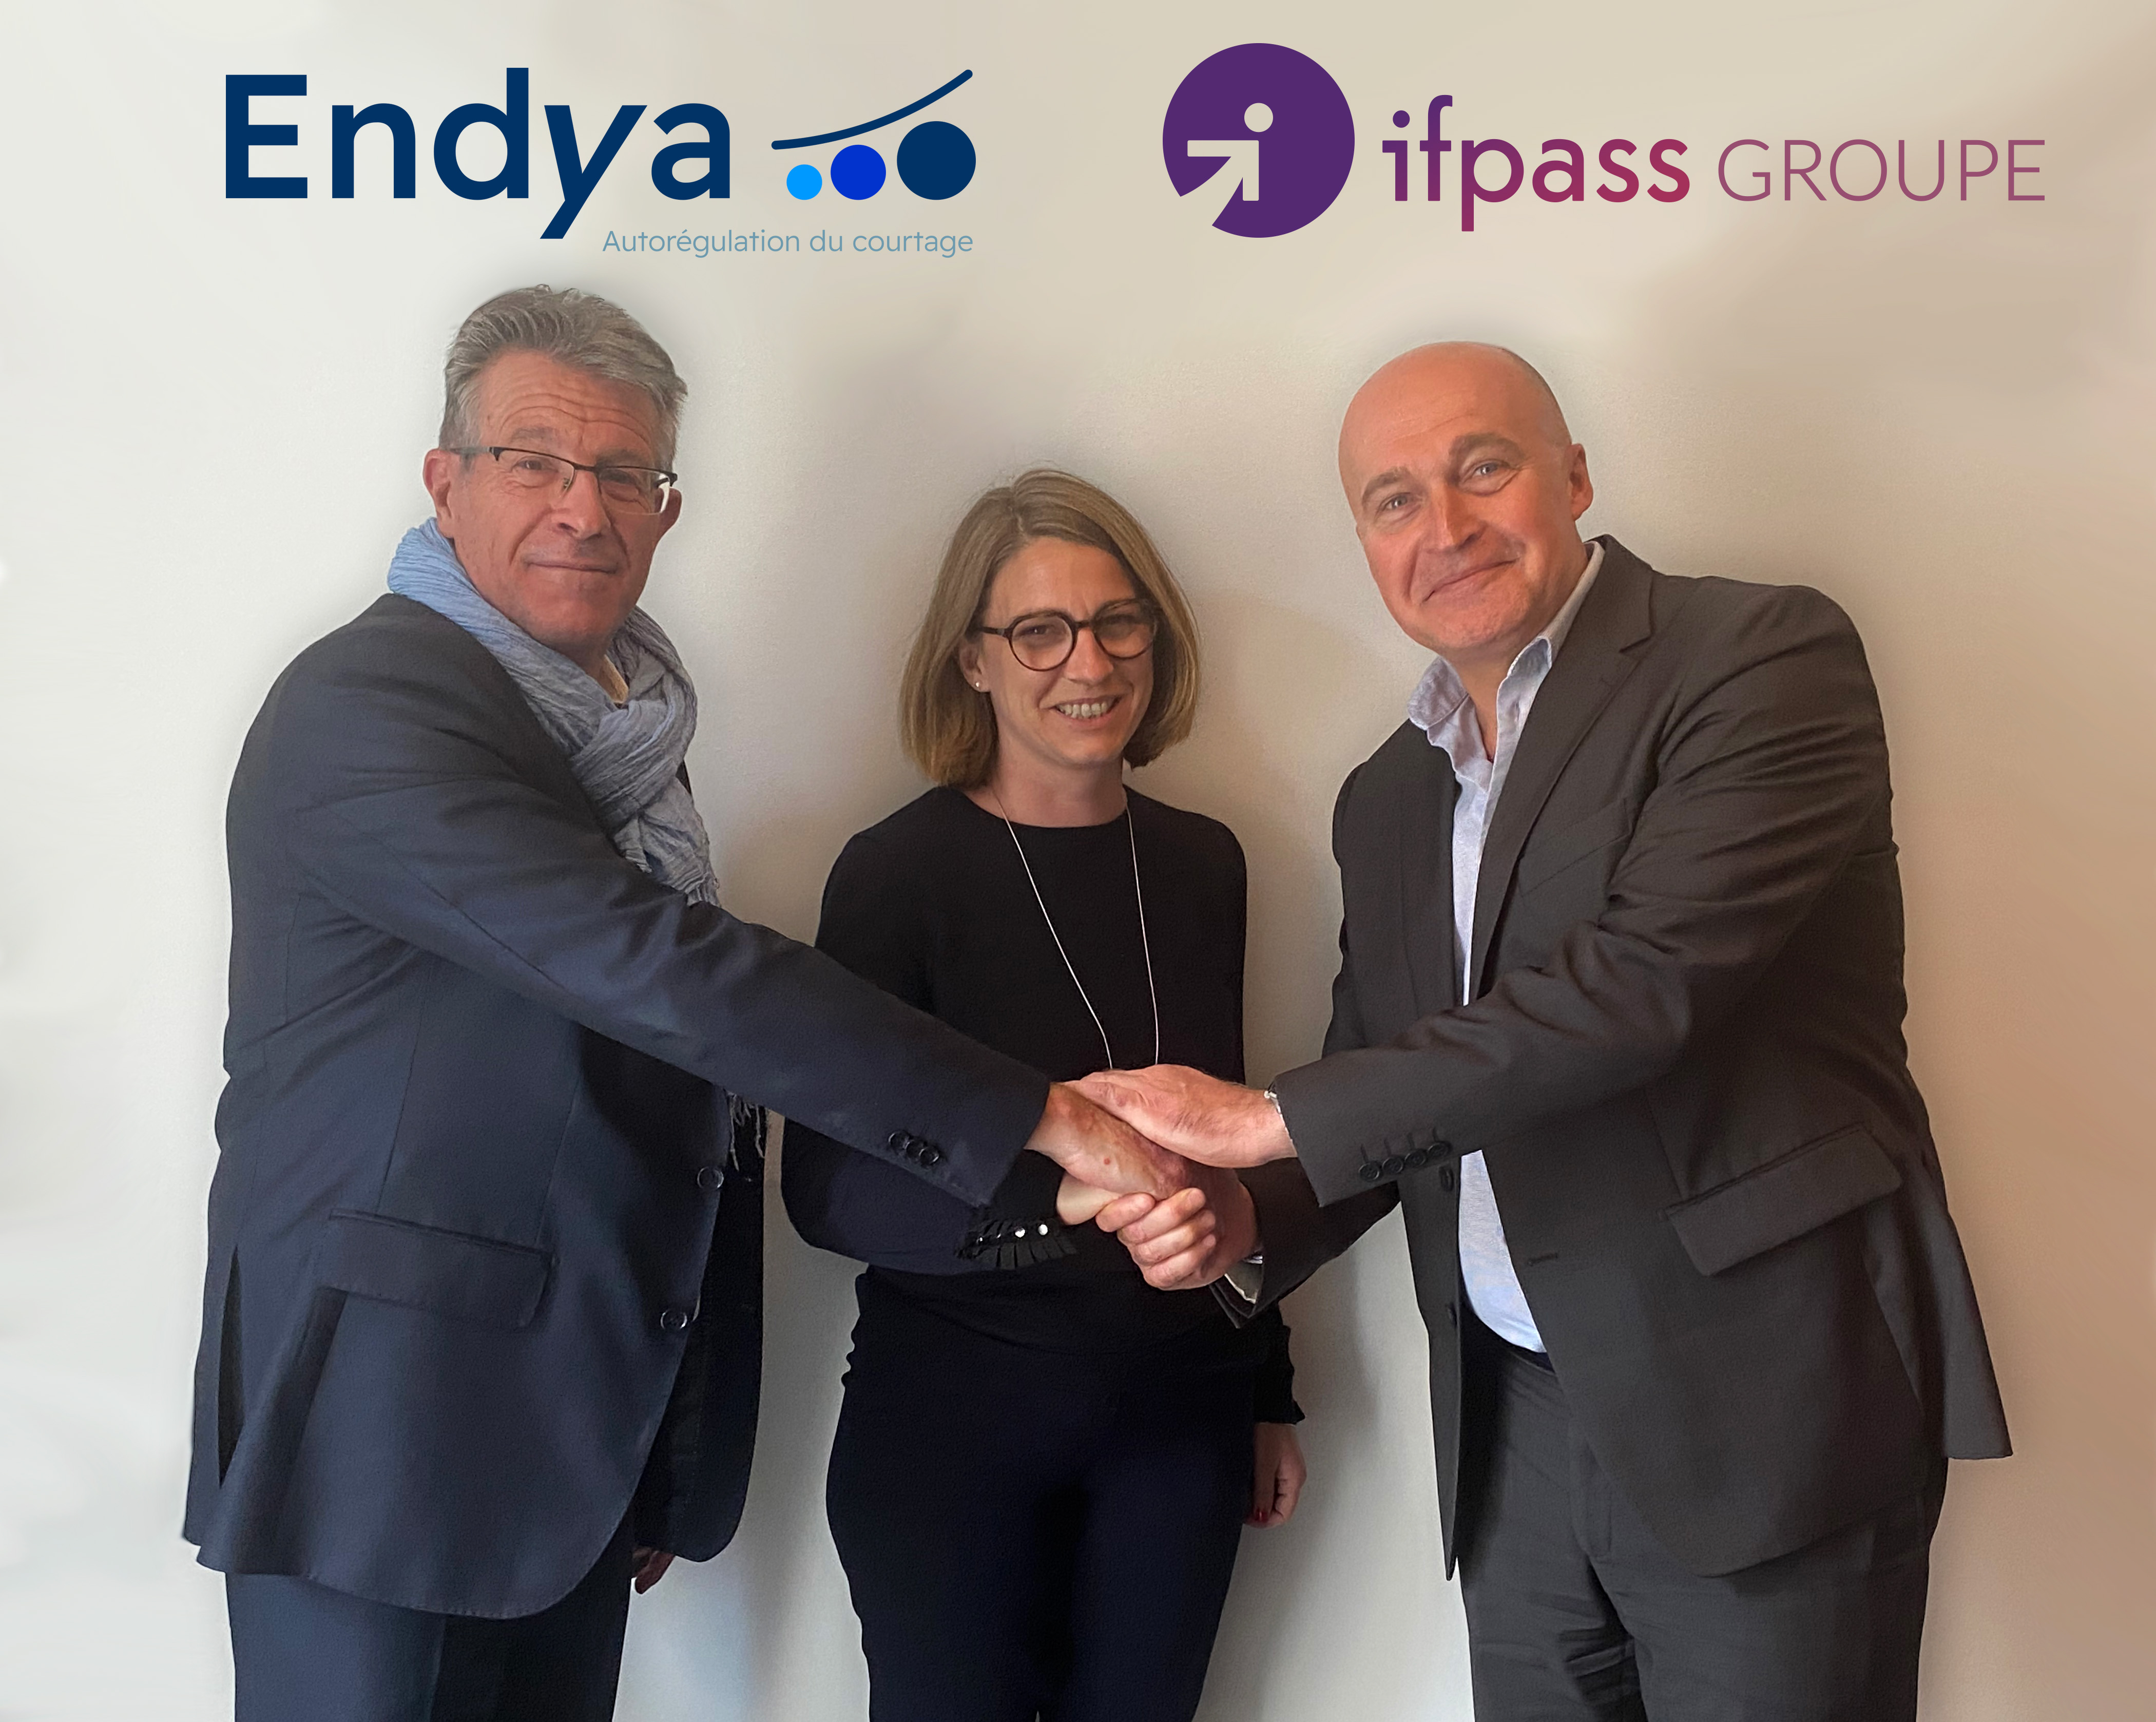 Partenariat stratégique entre Endya et le Groupe Ifpass